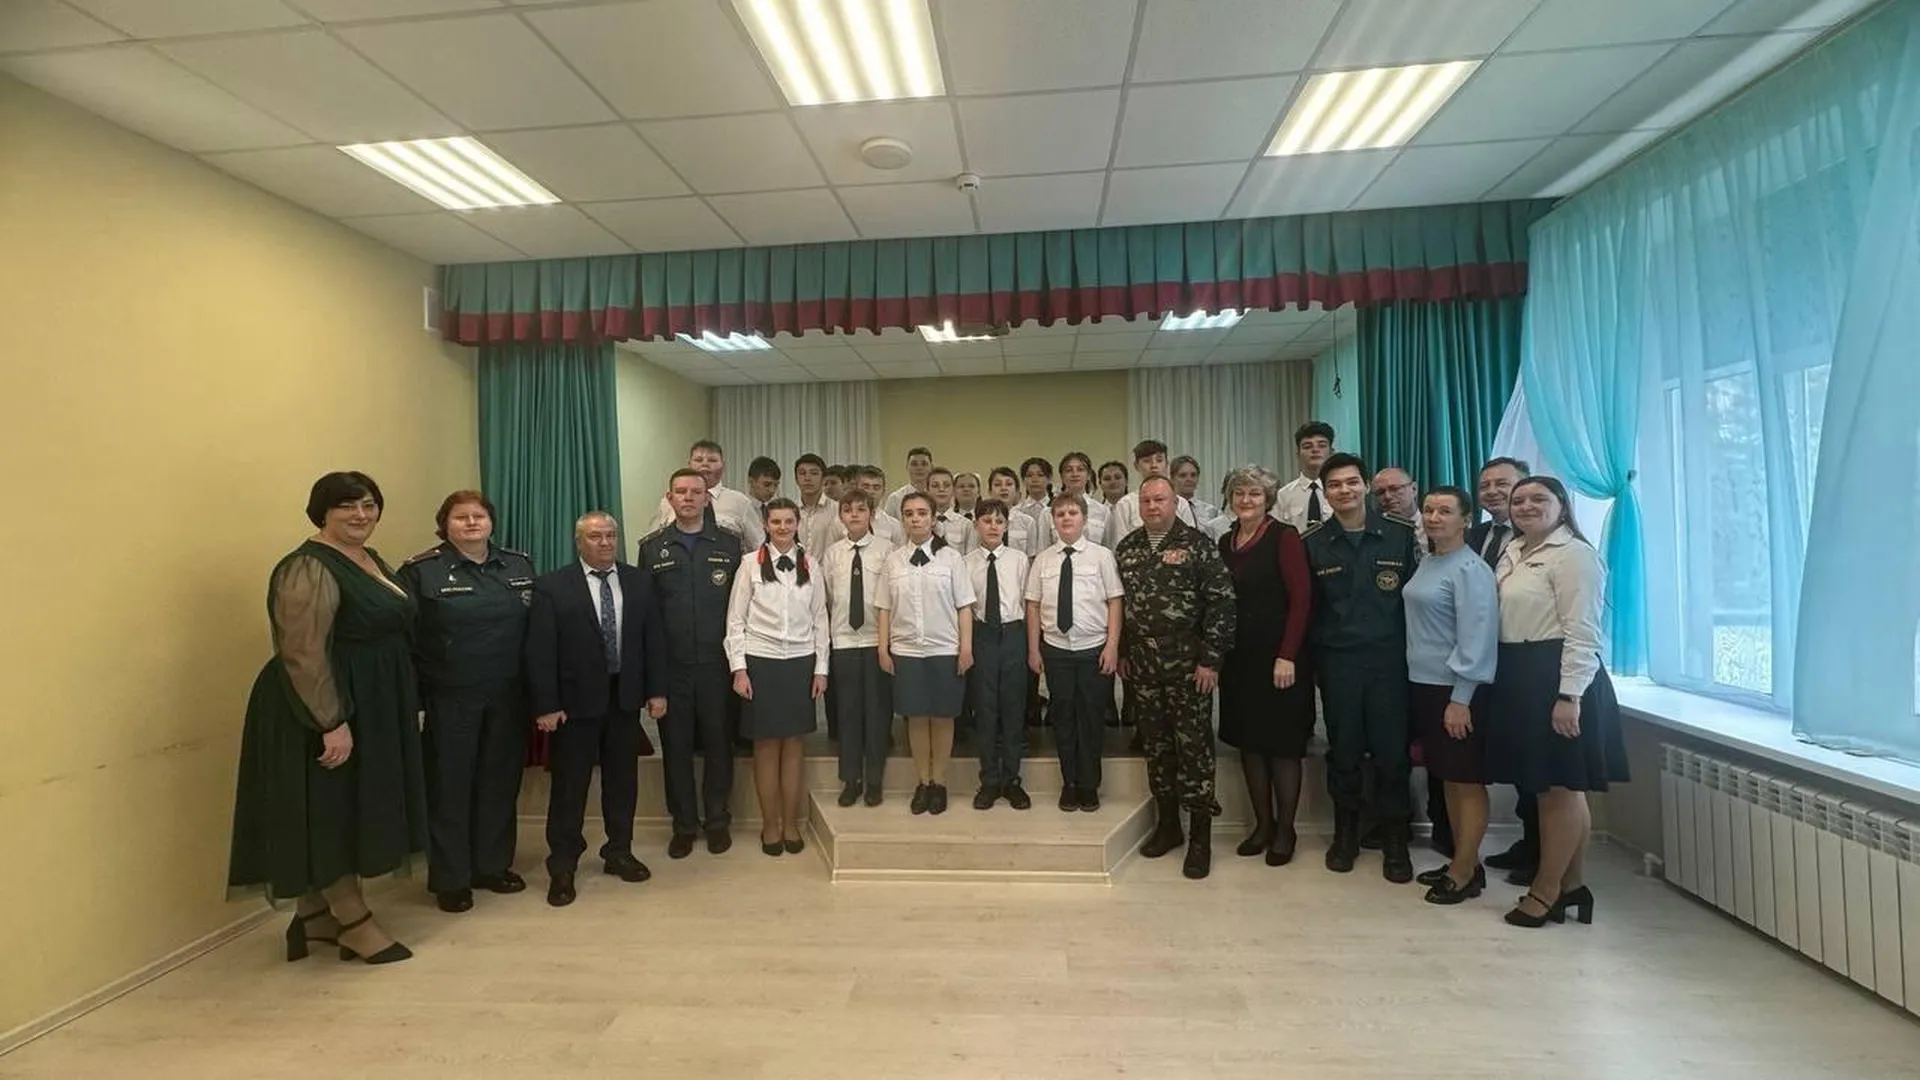 Учащихся Вербиловской школы в Талдомском округе торжественно посвятили в кадеты